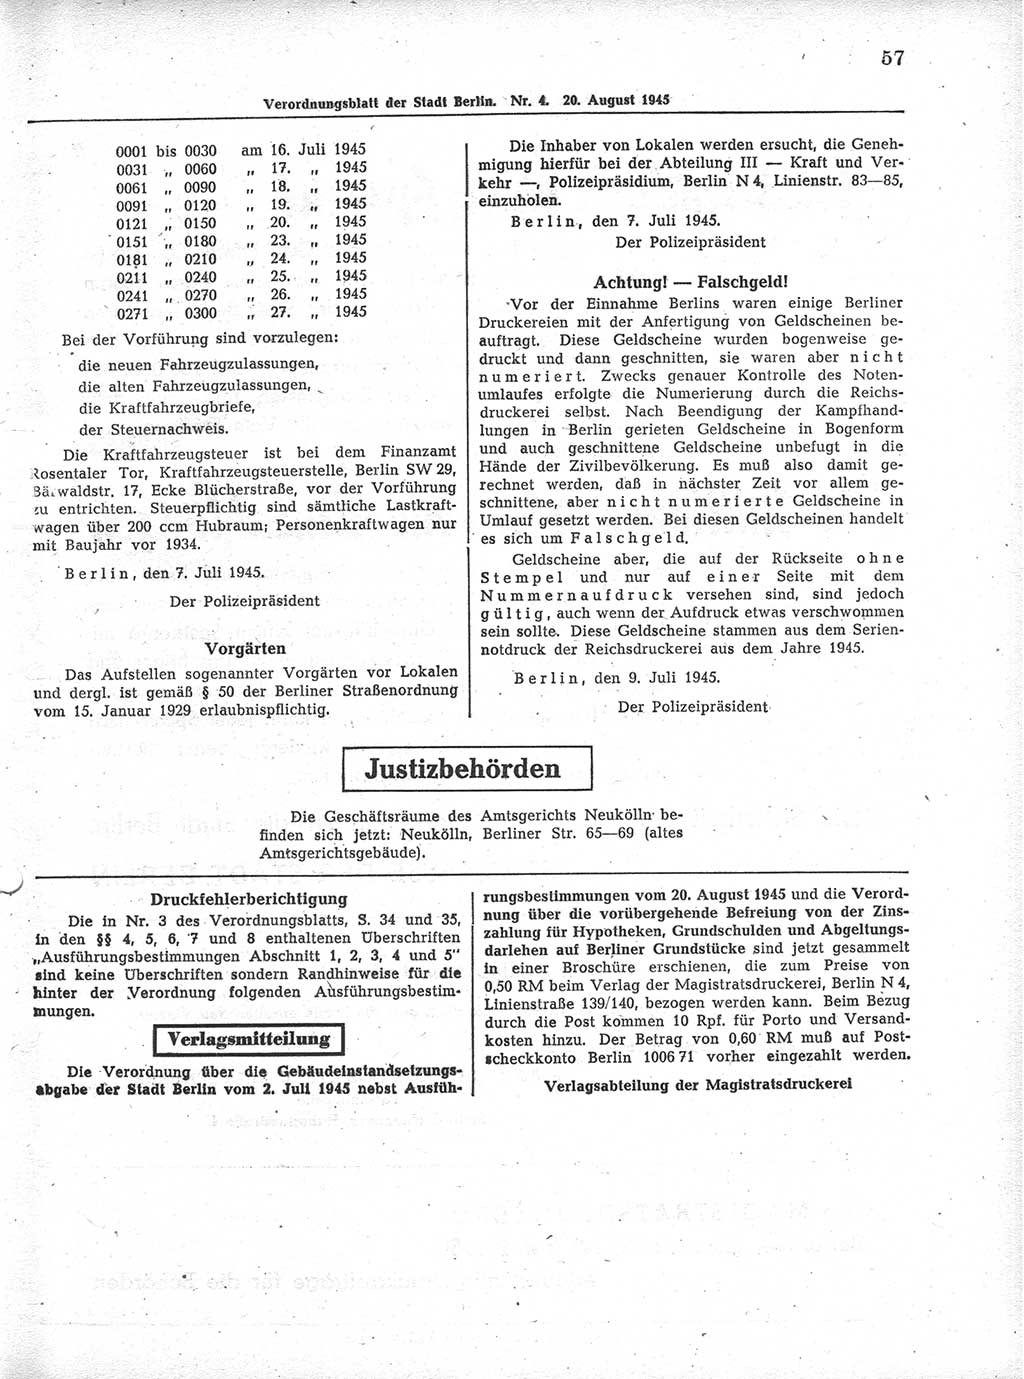 Verordnungsblatt (VOBl.) der Stadt Berlin 1945, Seite 57 (VOBl. Bln. 1945, S. 57)